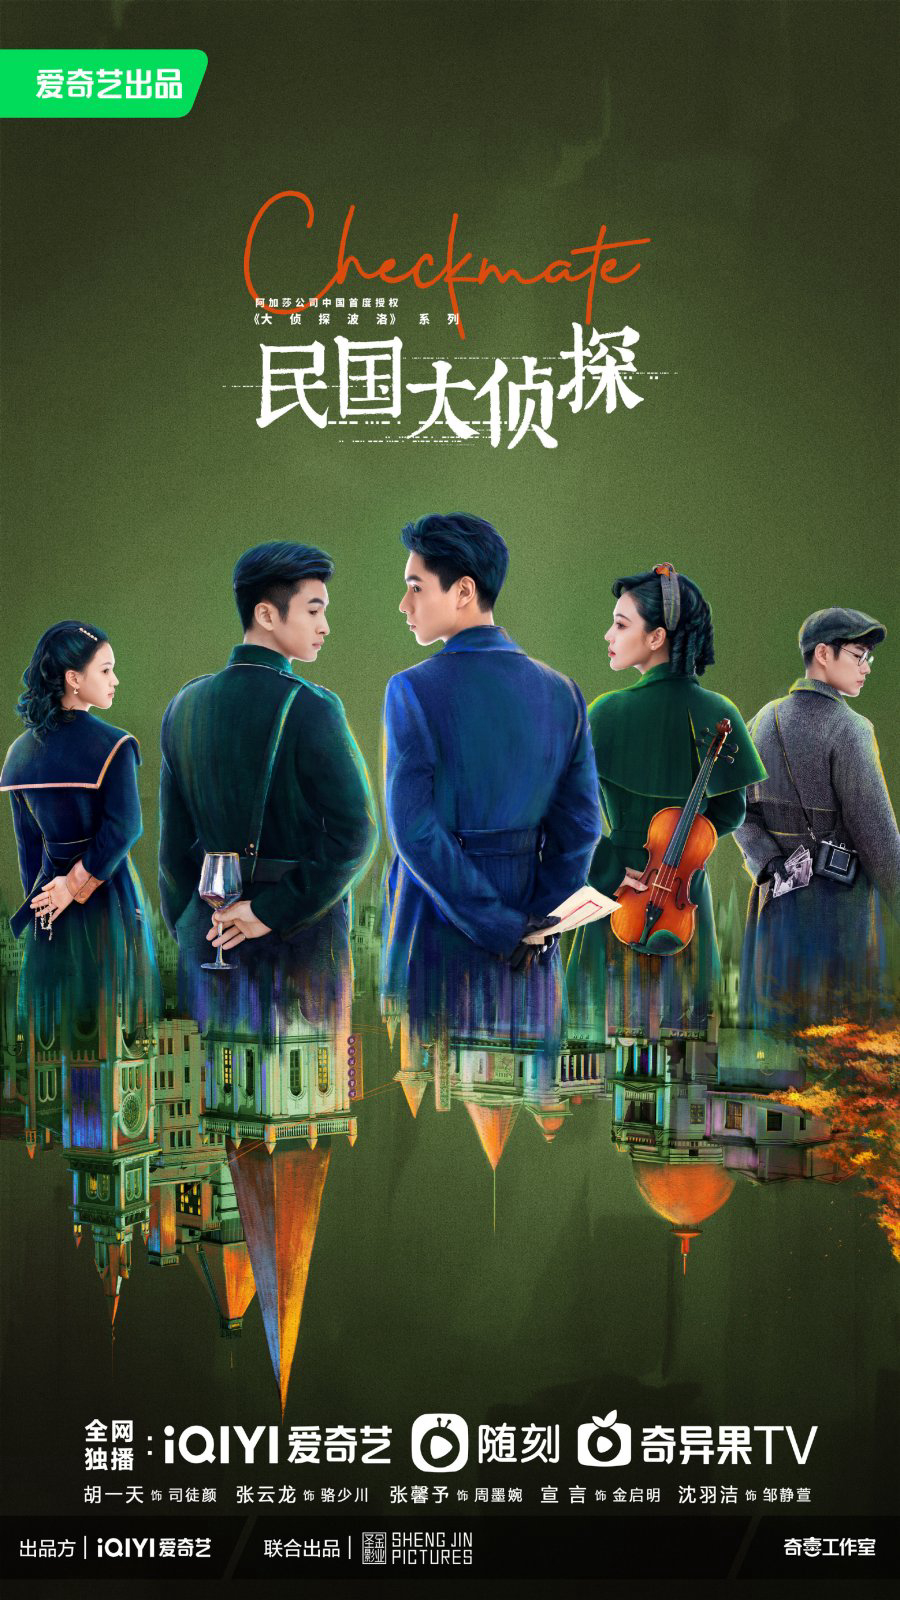 Poster Phim Dân Quốc Đại Trinh Thám (Checkmate)